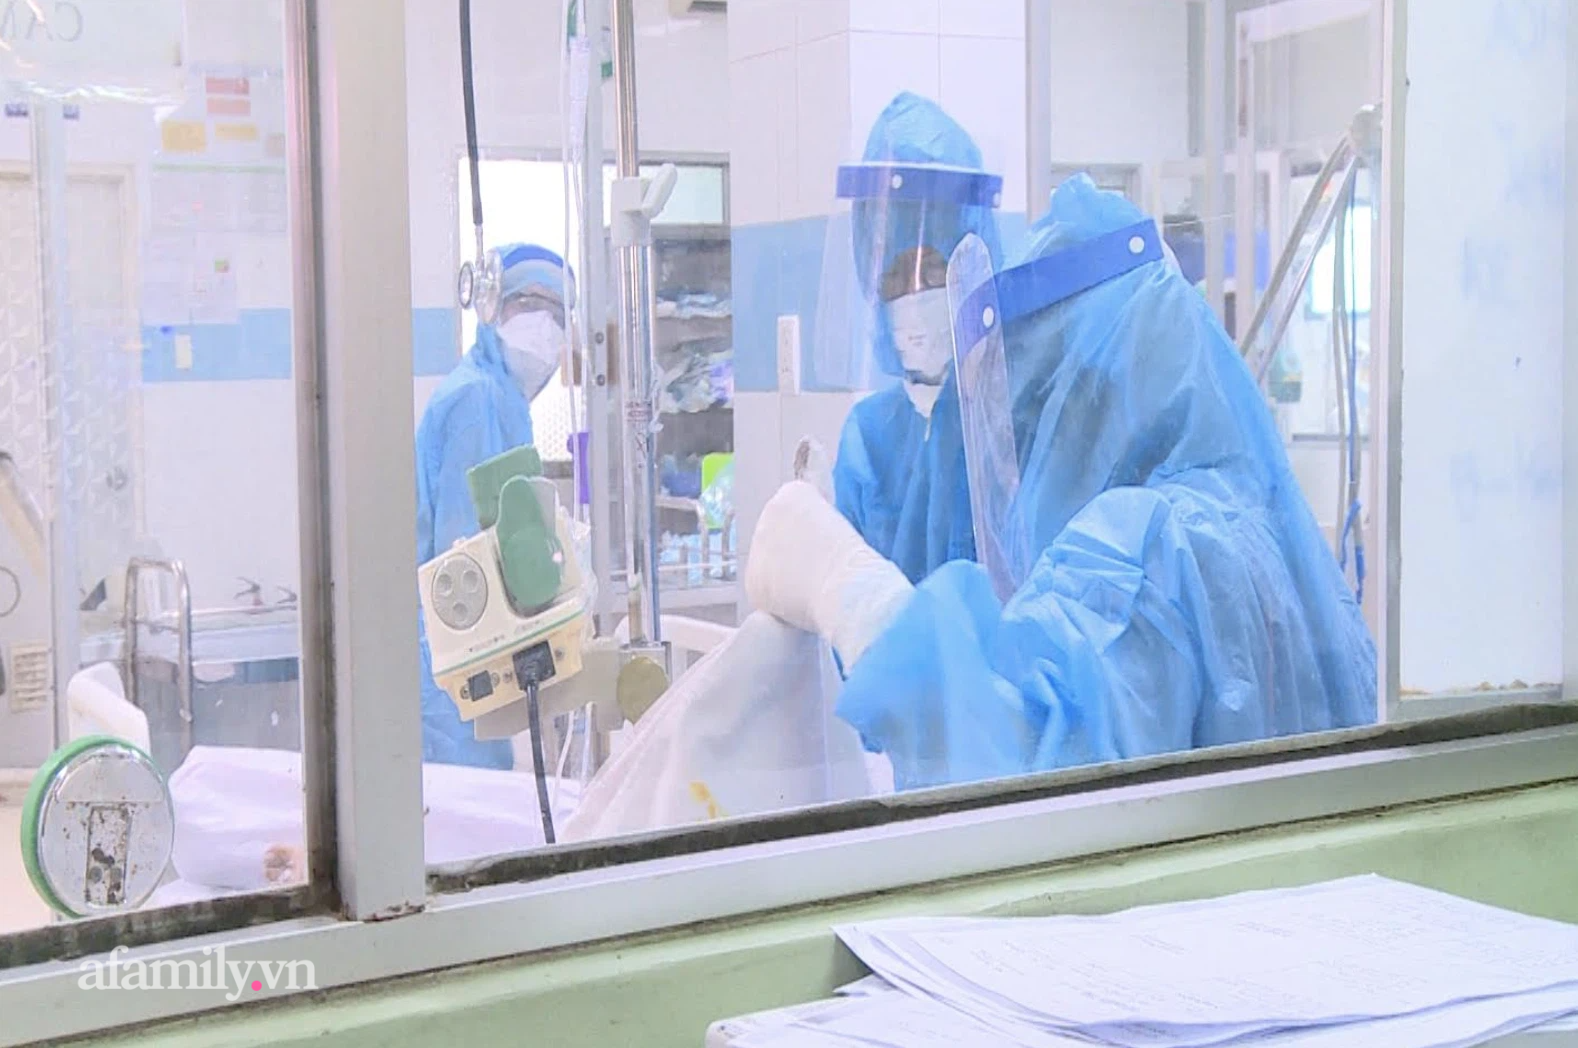 NÓNG: 3 nhân viên y tế Bệnh viện Bệnh Nhiệt đới TP.HCM dương tính SARS-CoV-2 - Ảnh 1.